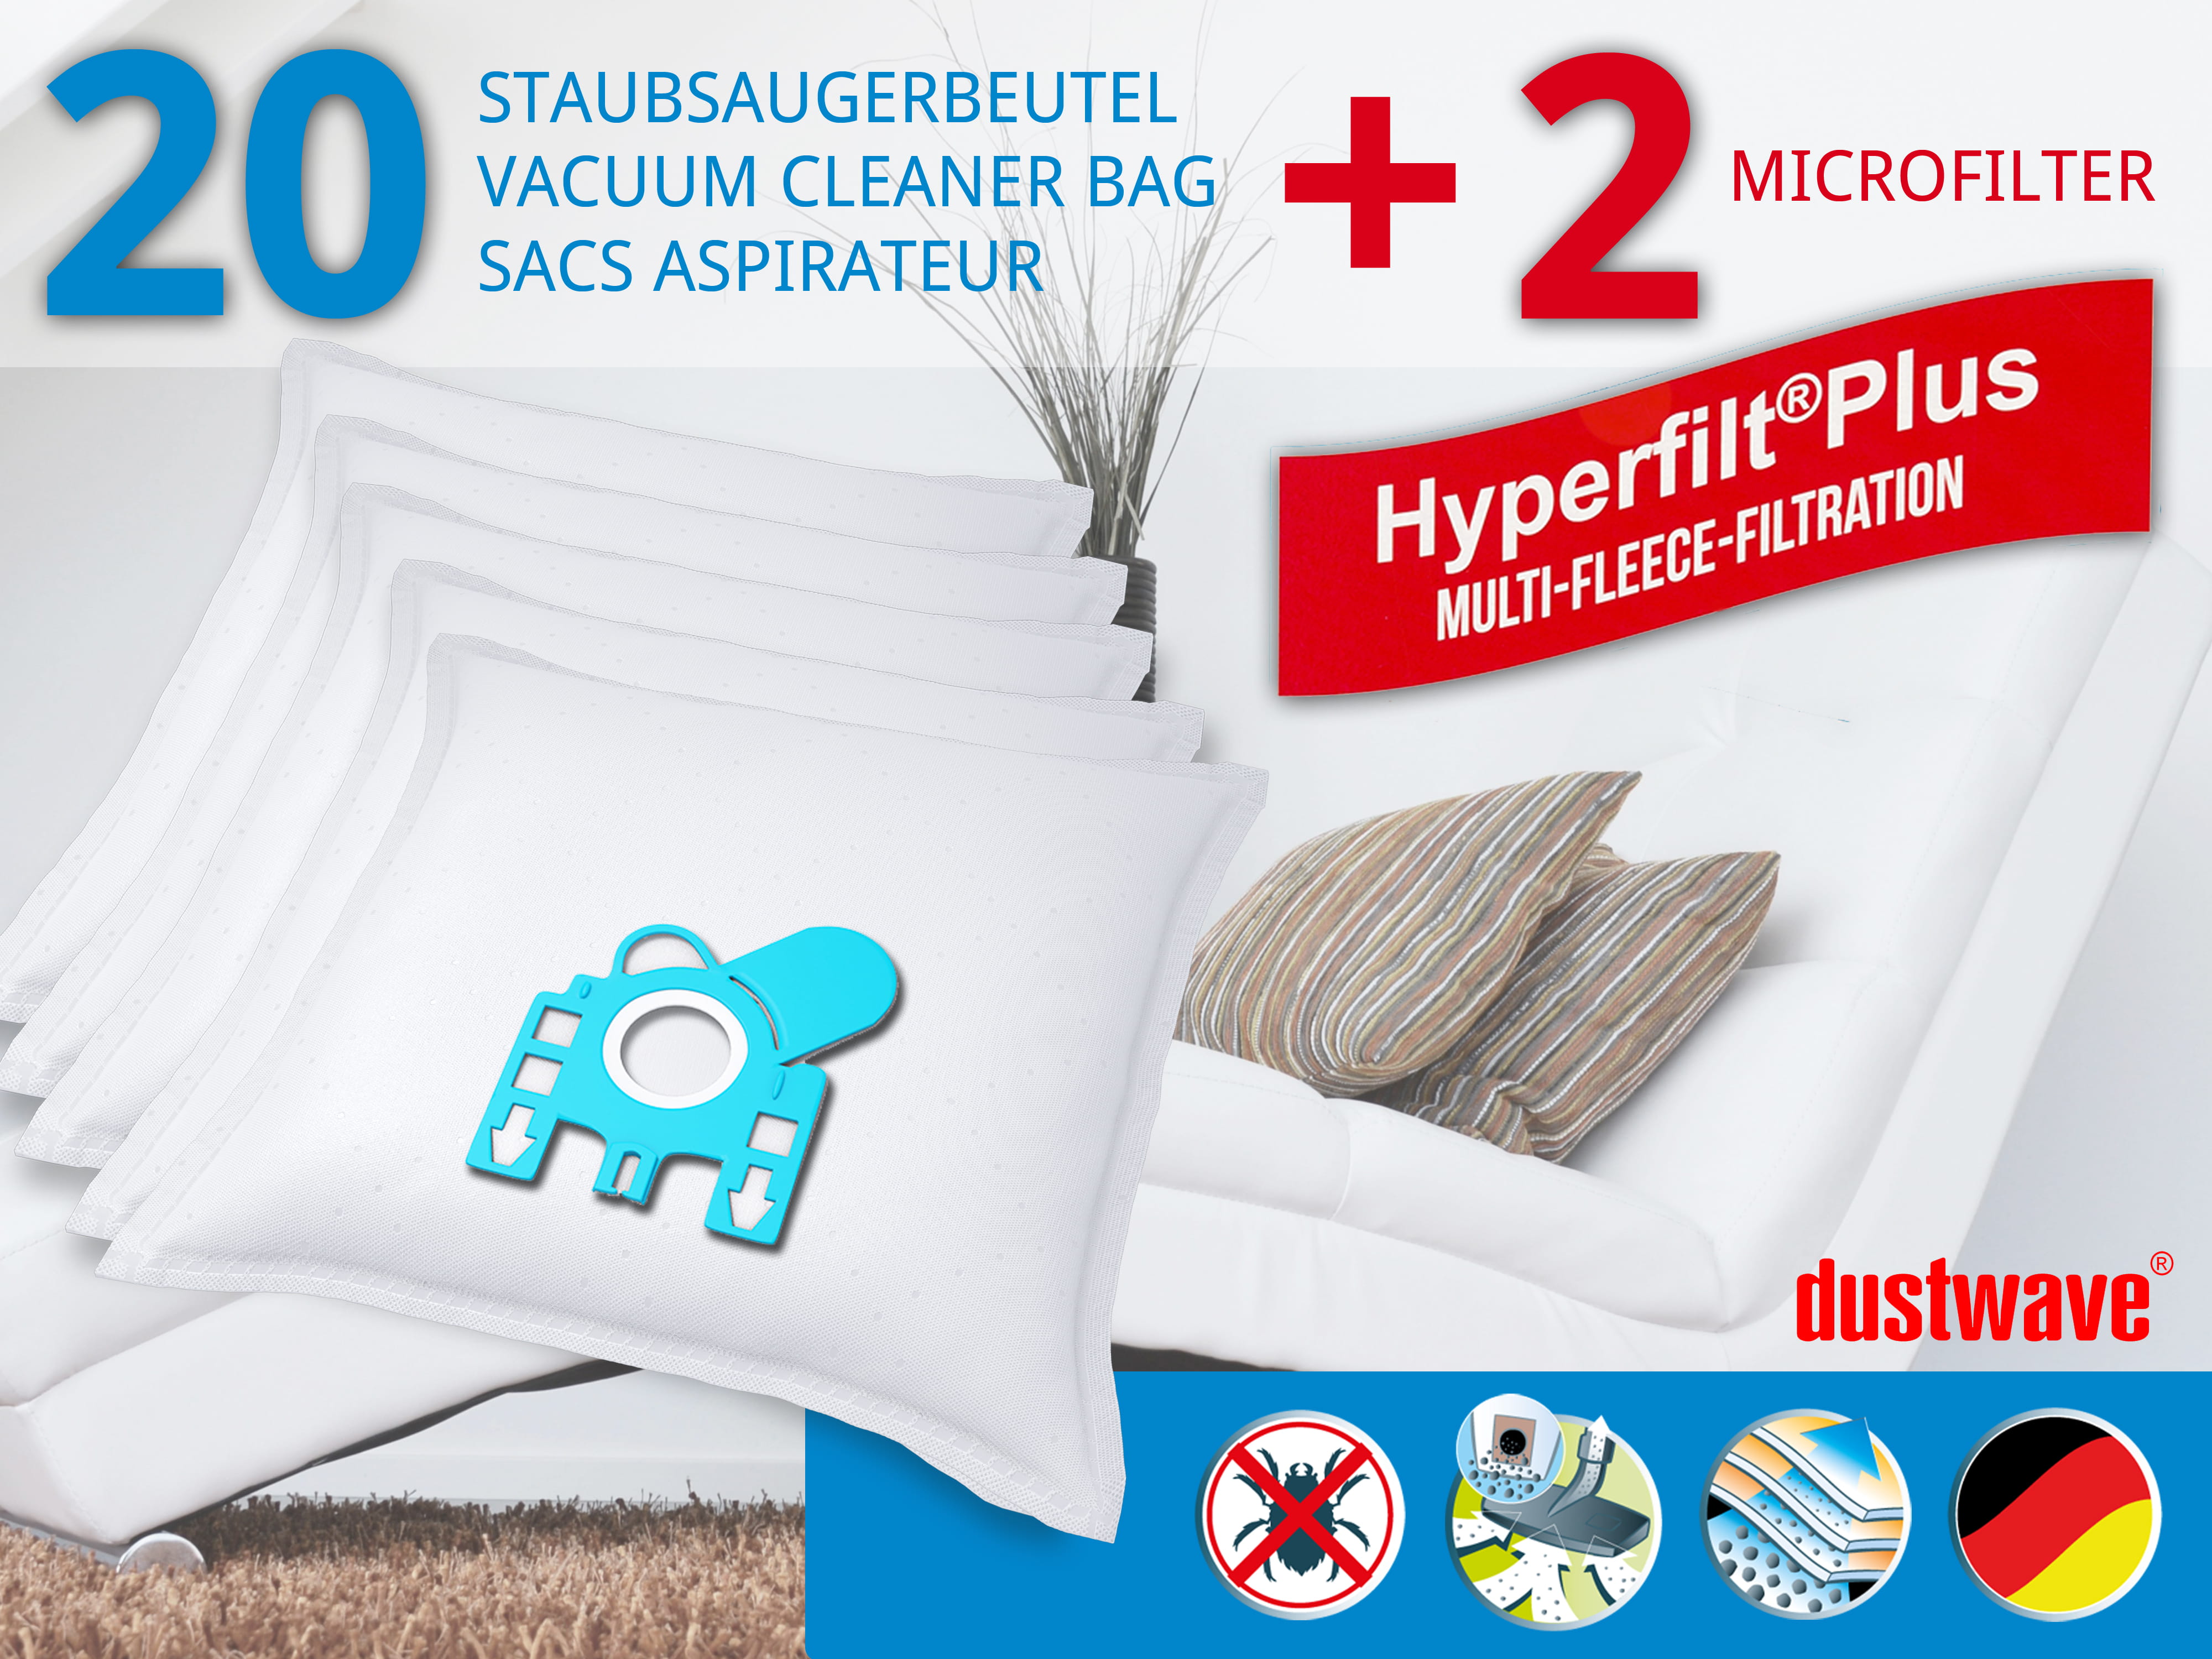 Dustwave® 20 Staubsaugerbeutel für Hoover S3742 / S 3742 - hocheffizient, mehrlagiges Mikrovlies mit Hygieneverschluss - Made in Germany